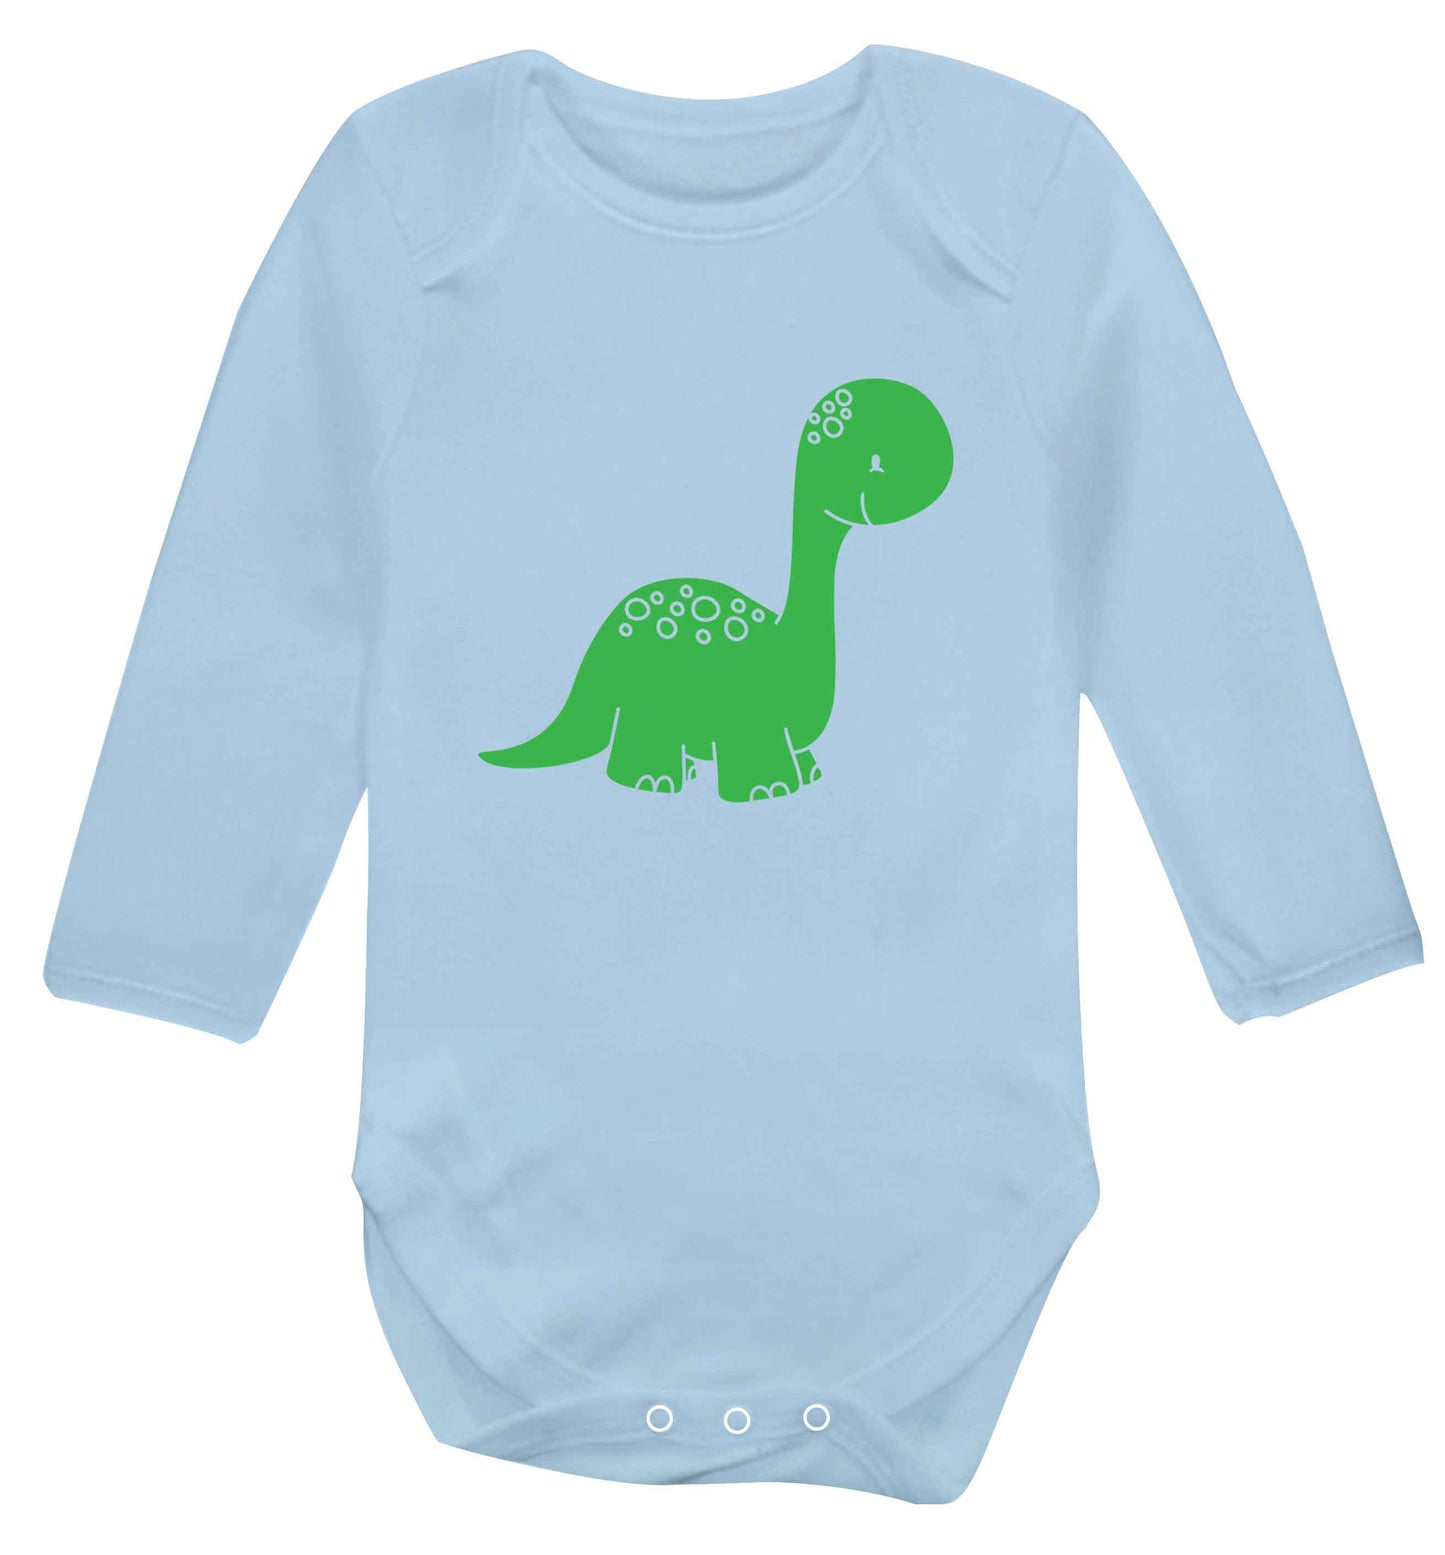 Dinosaur illustration baby vest long sleeved pale blue 6-12 months